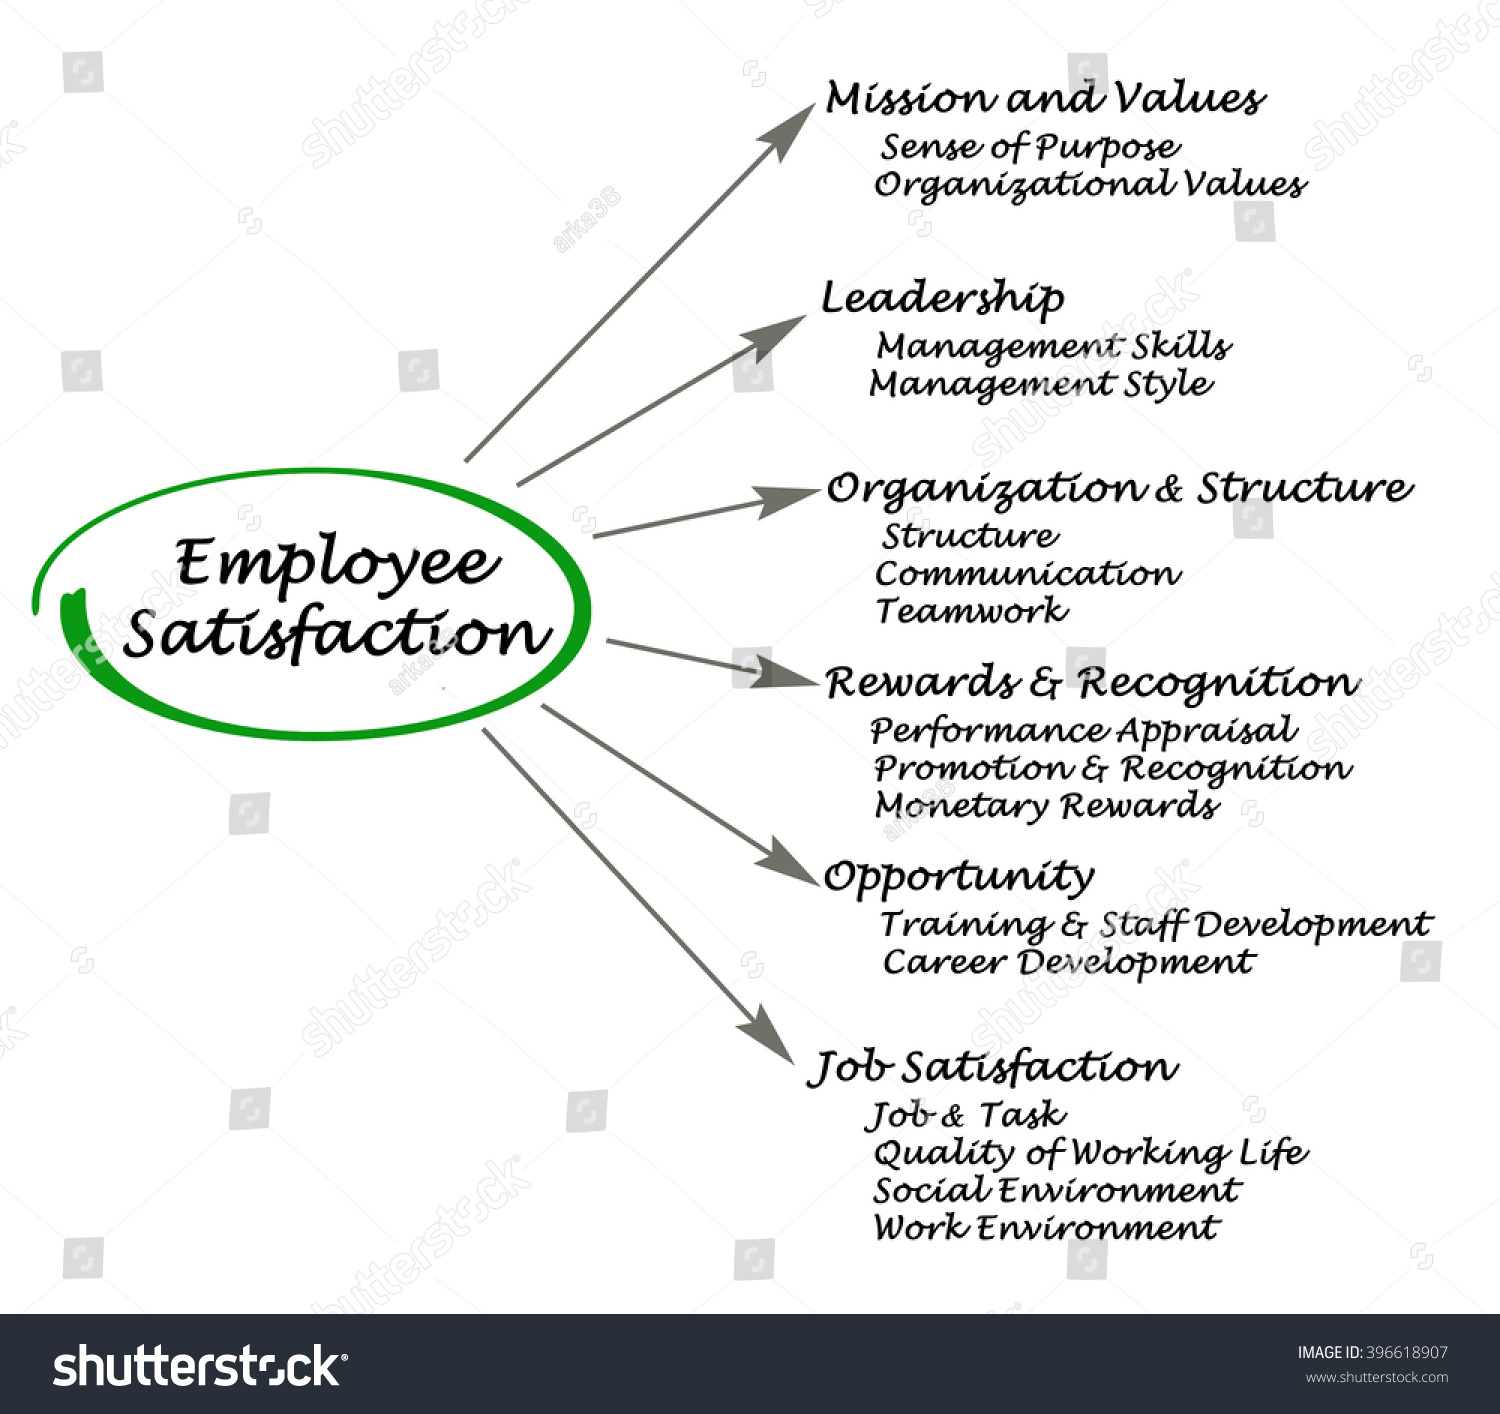 Study on employee job satisfaction